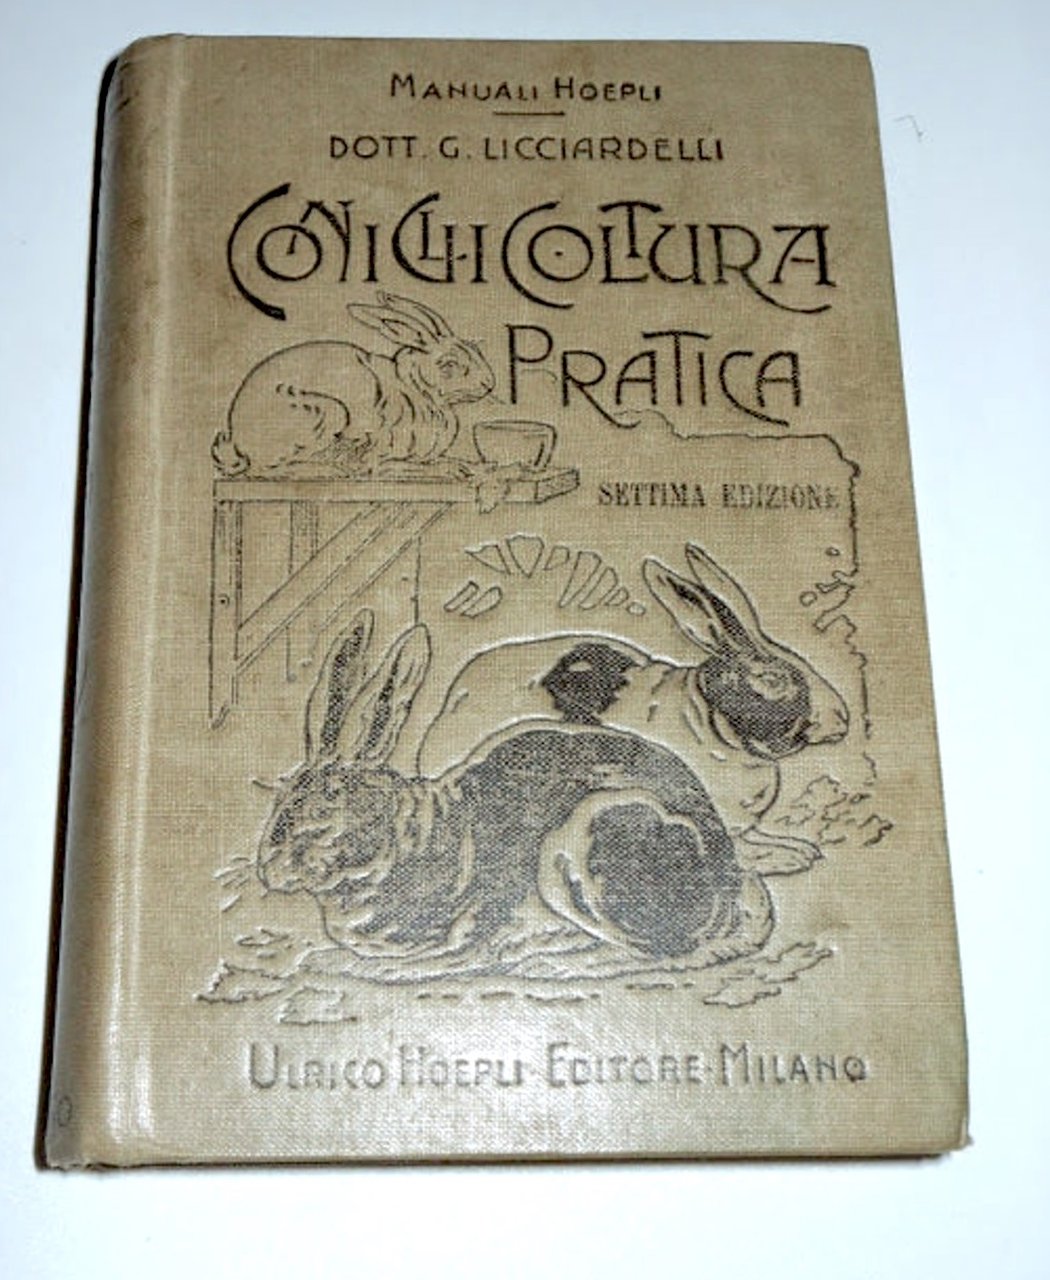 Manuali Hoepli - Coniglicoltura pratica - ed. 1918